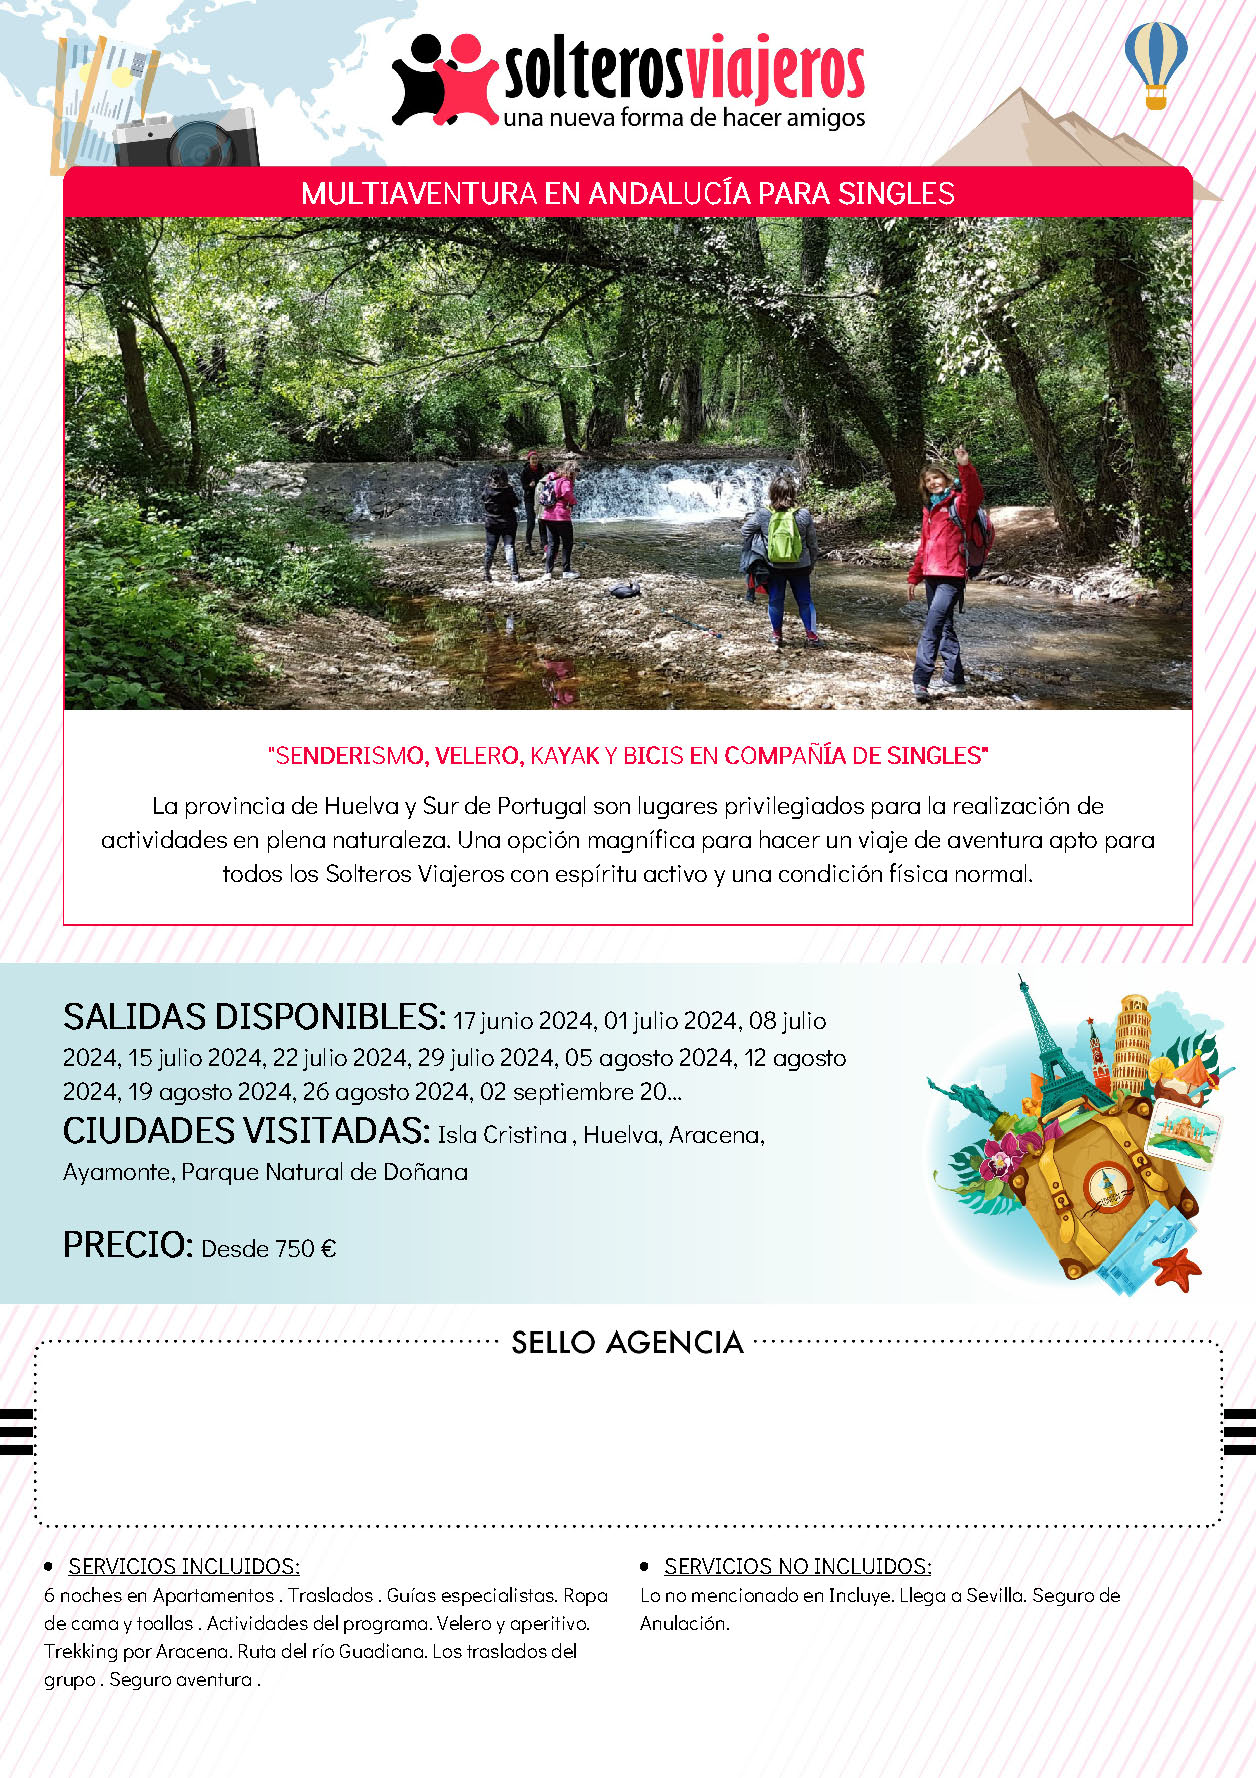 Oferta Solteros Viajeros Multiaventura en Andalucia con singles salidas Junio a Septiembre 2024